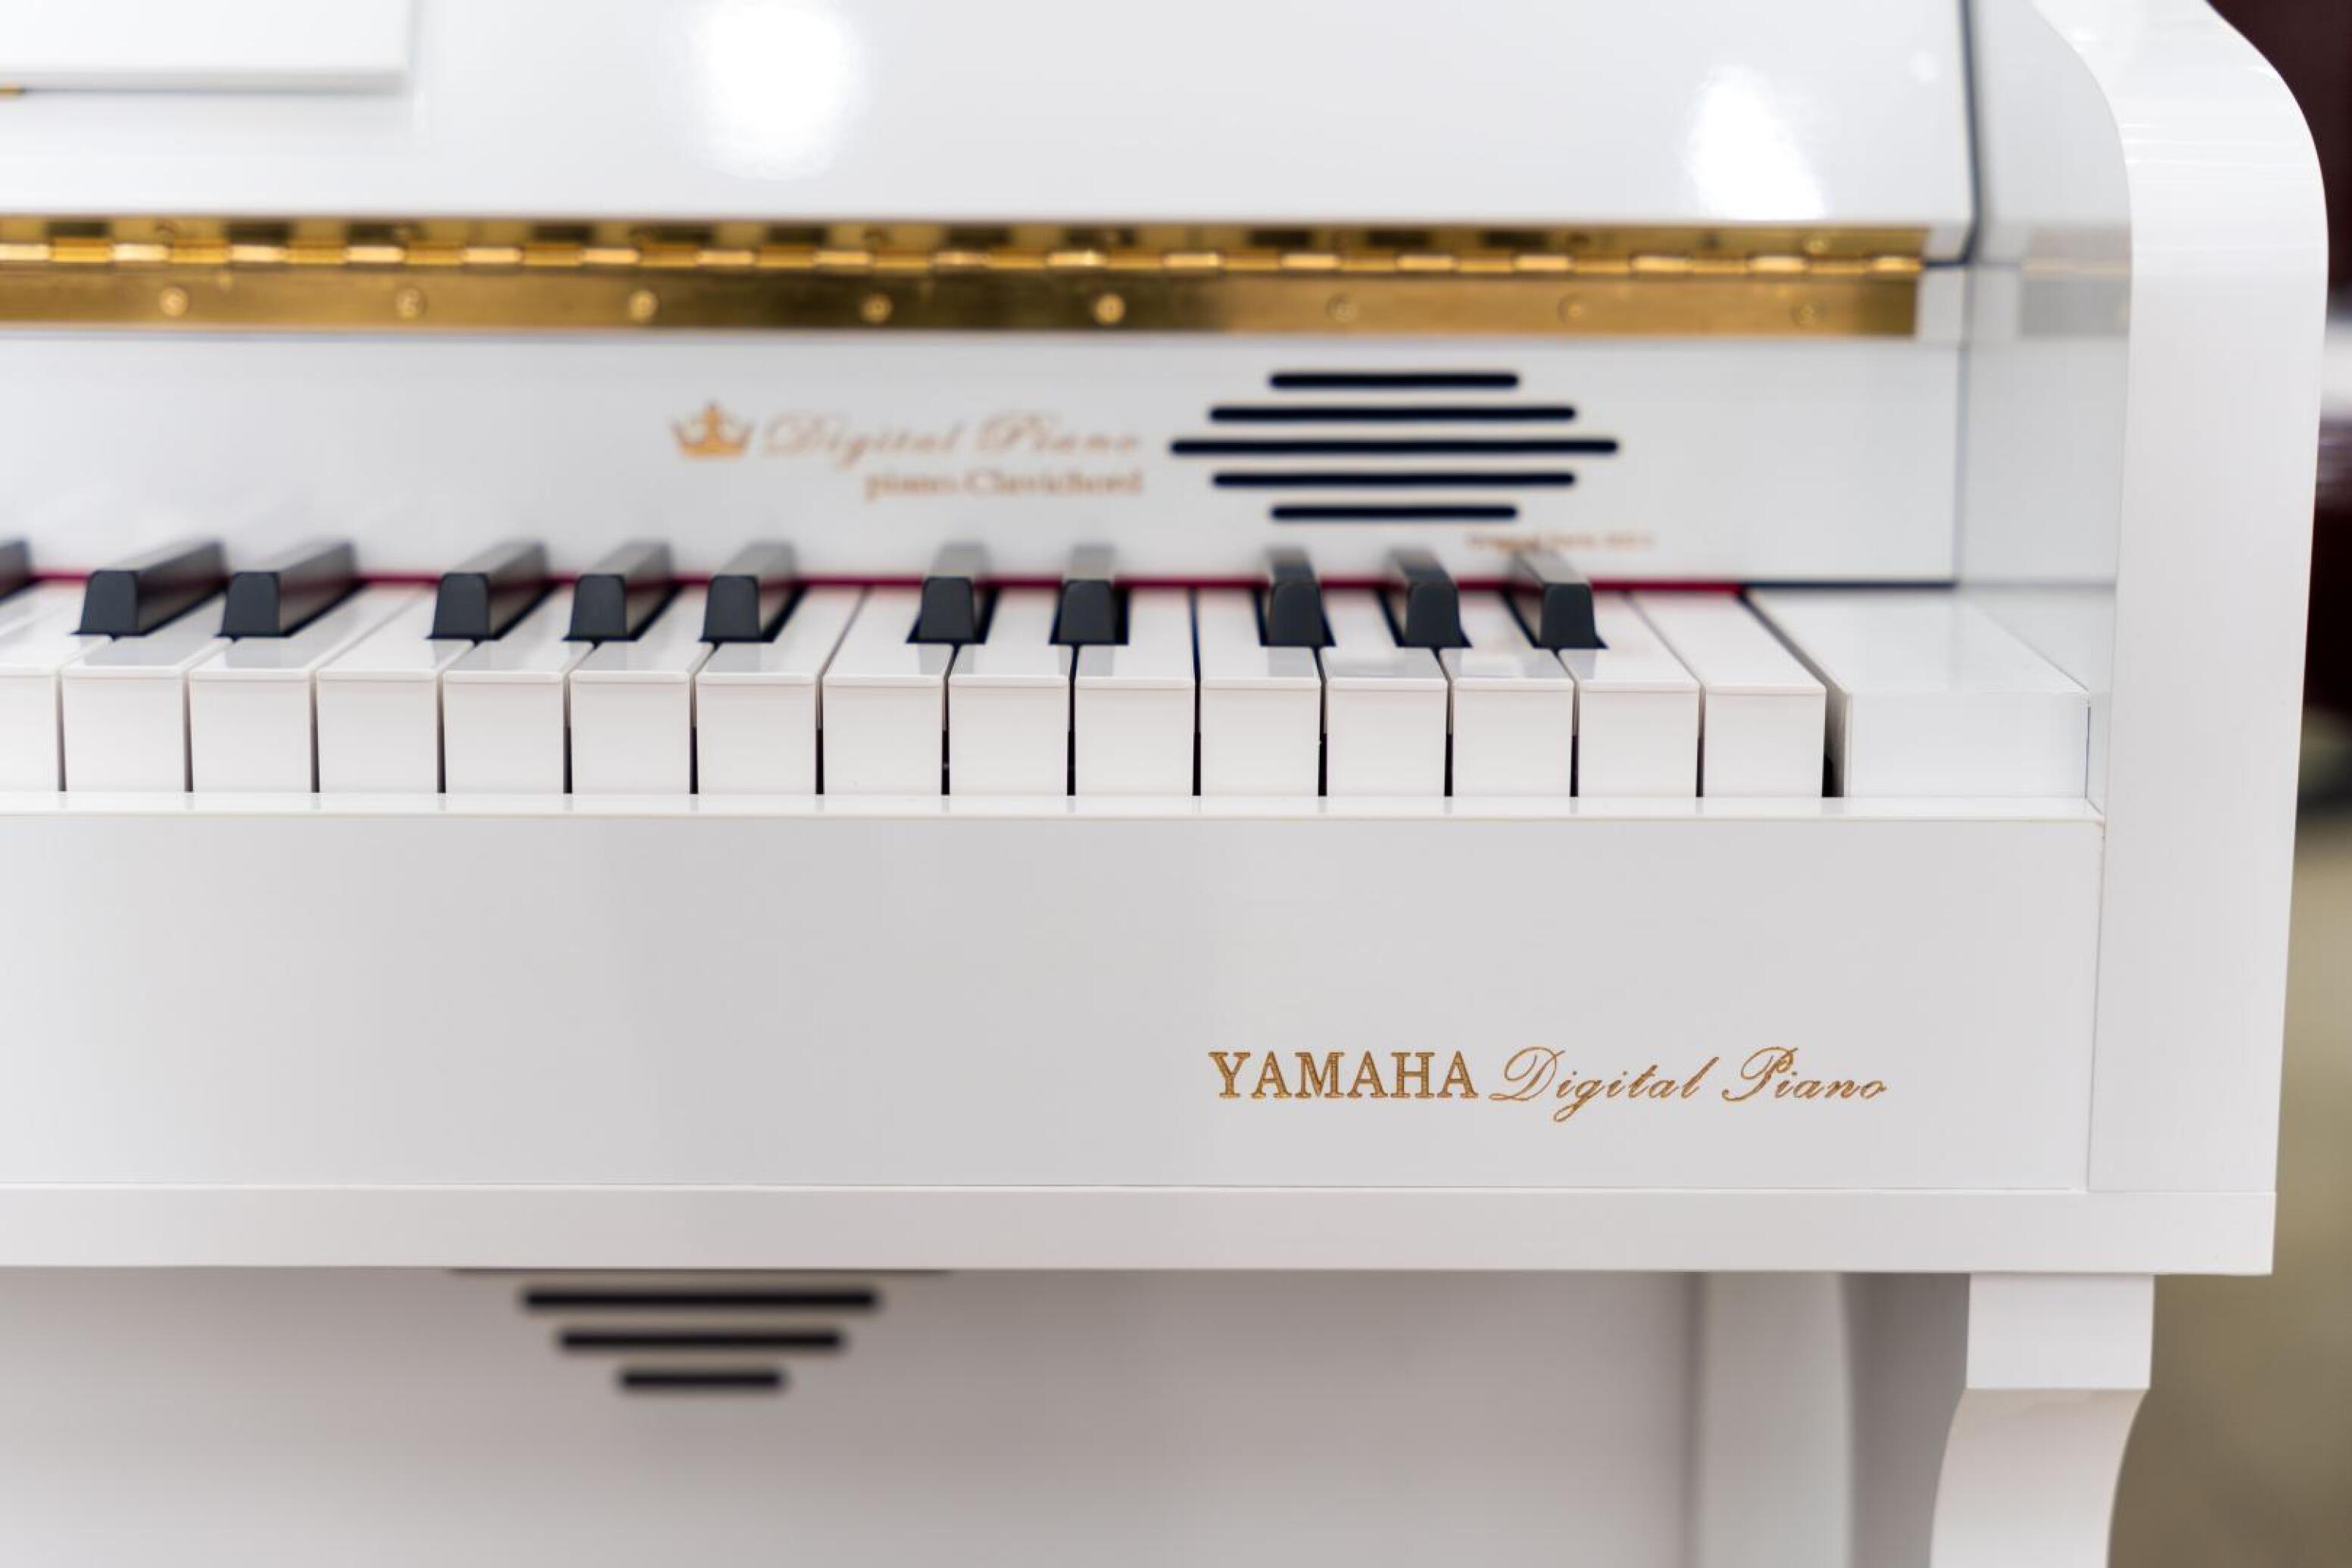  پیانو یاماها LX780 i 